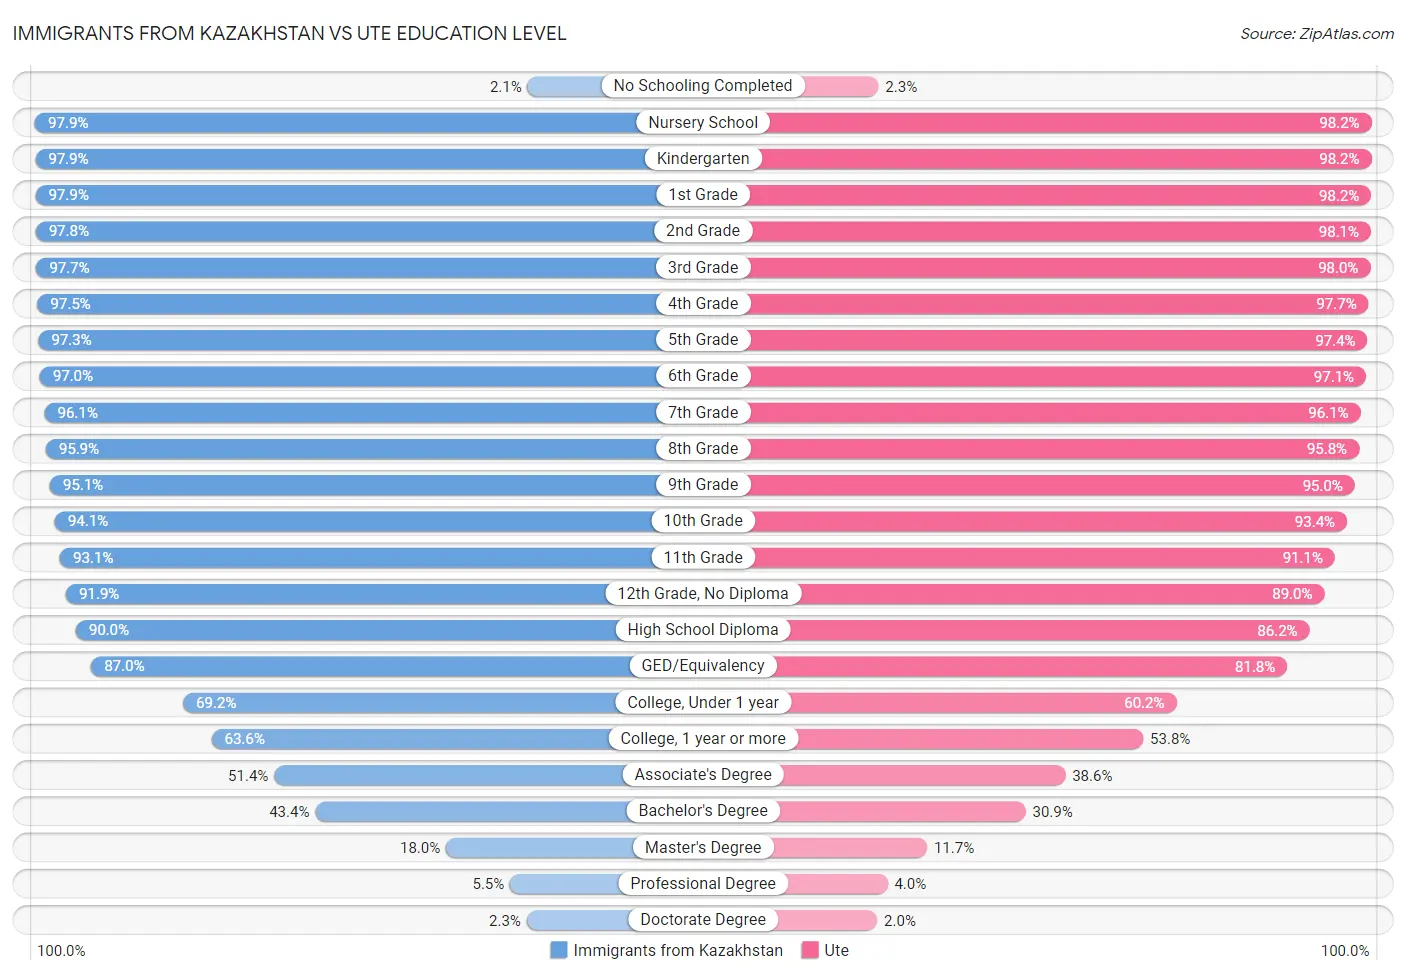 Immigrants from Kazakhstan vs Ute Education Level